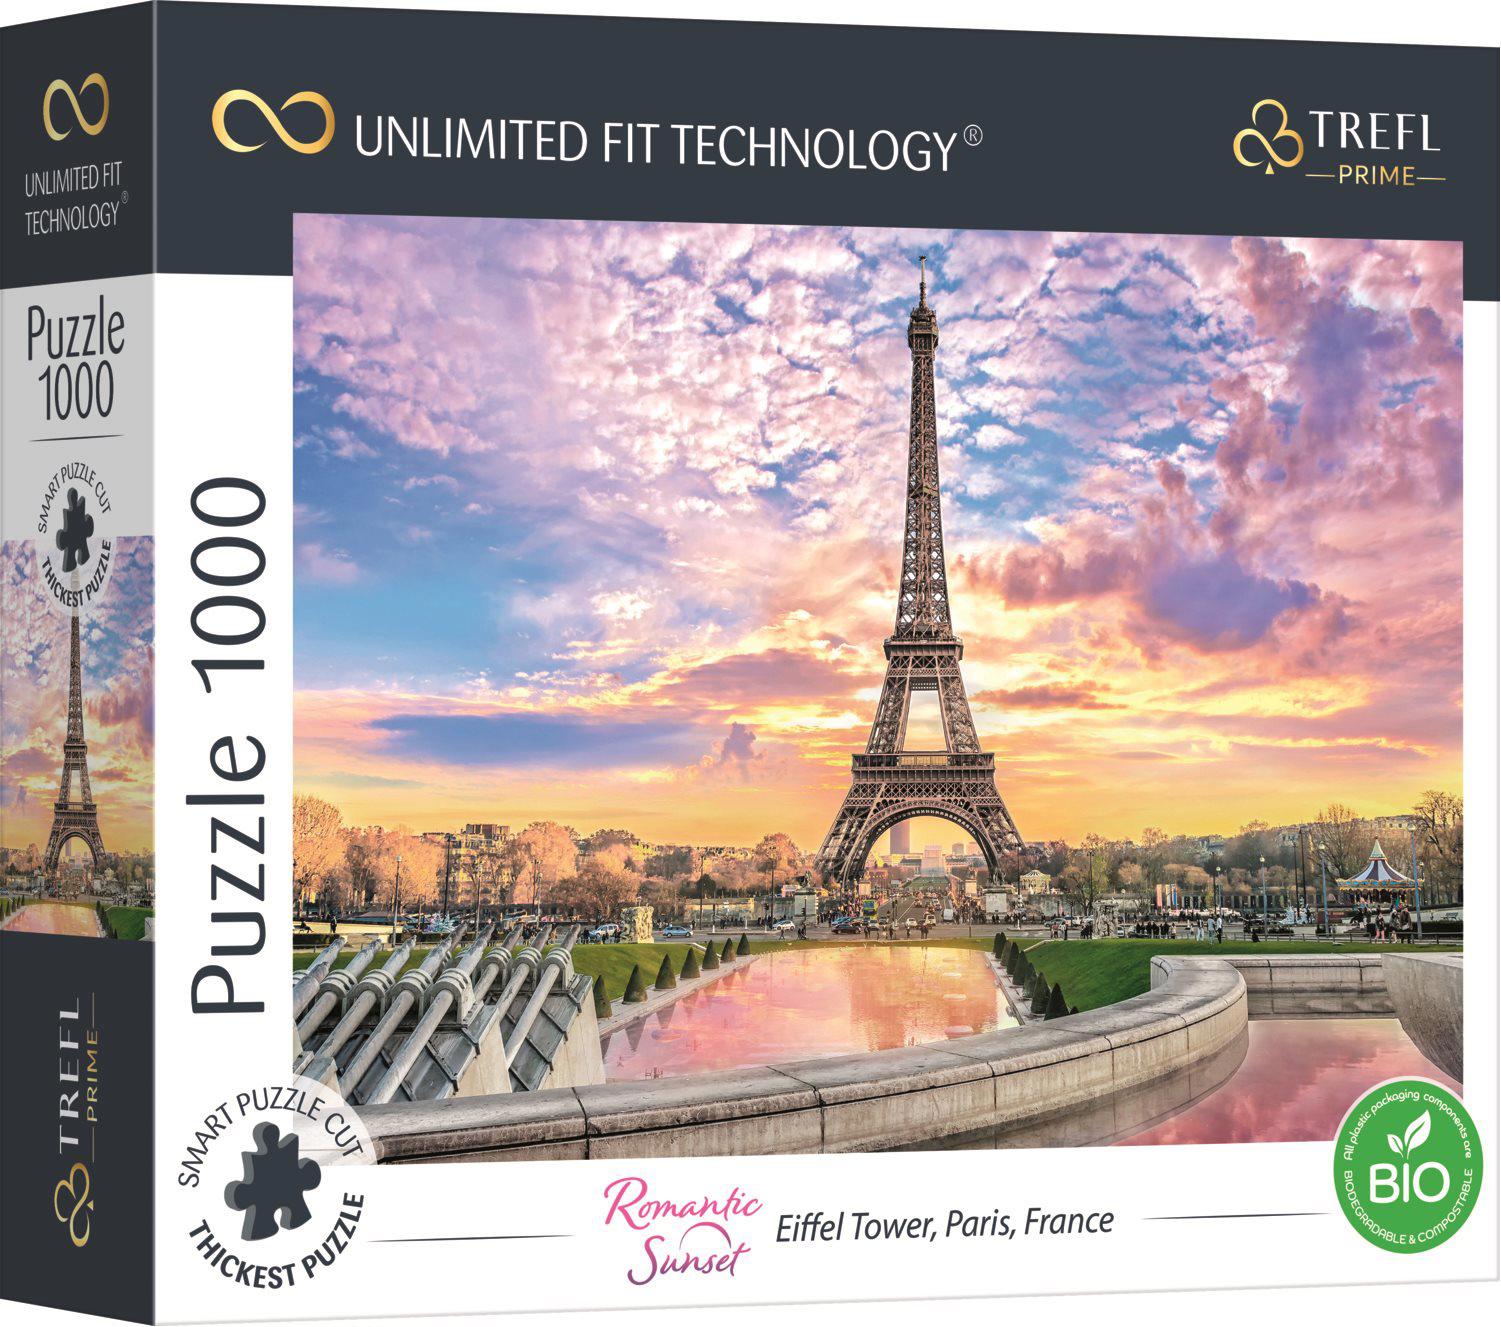 Puzzle Wieża Eiffla, Paryż, Francja UFT